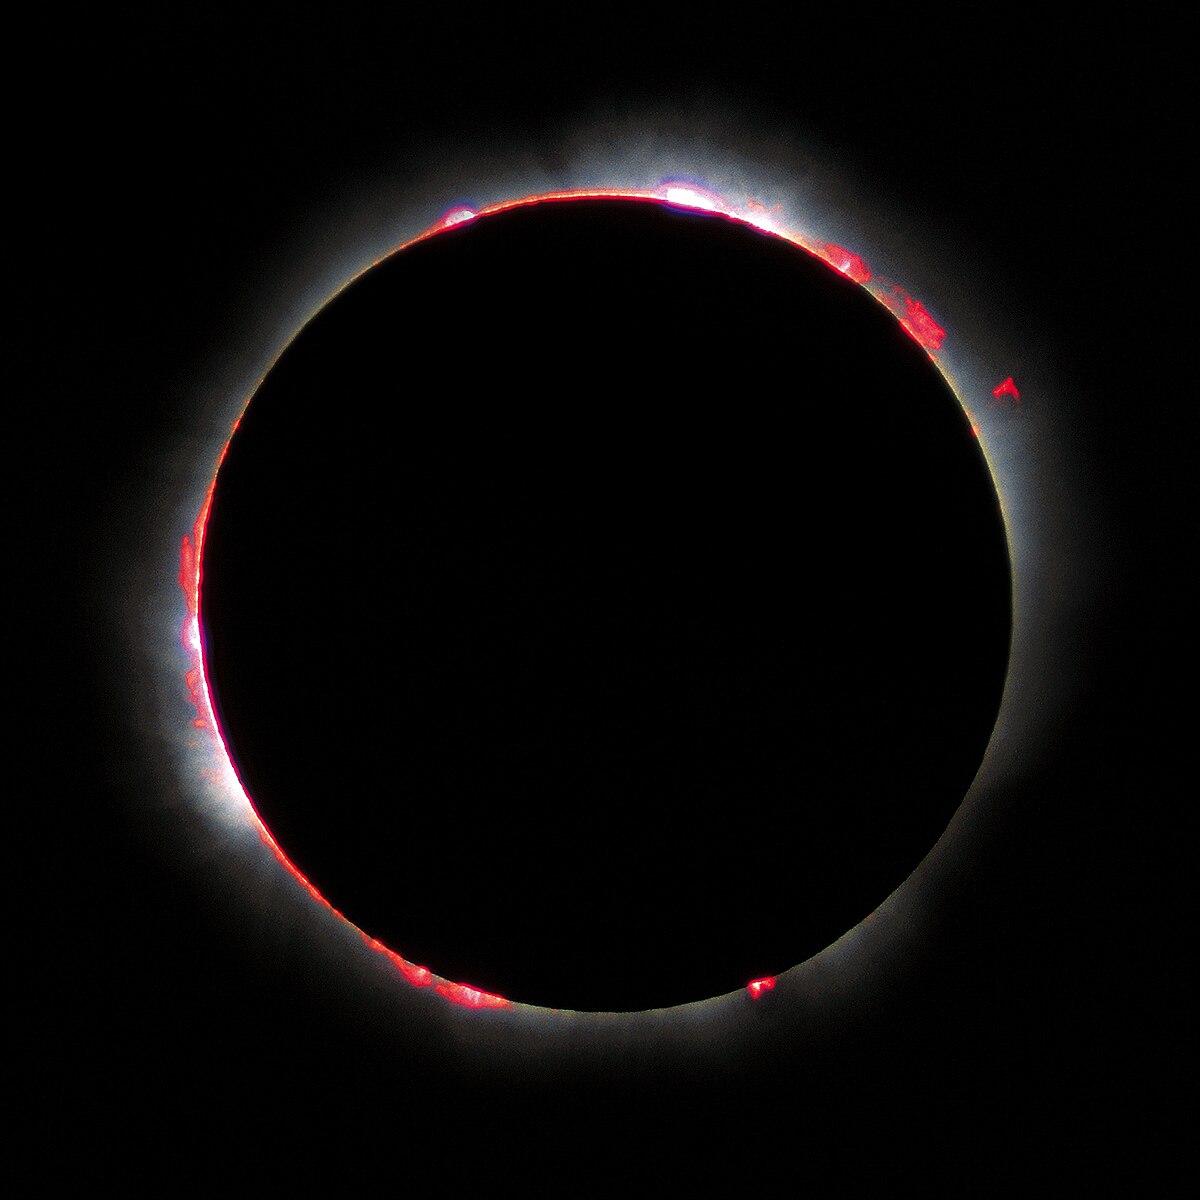 eclipse solaire 1999